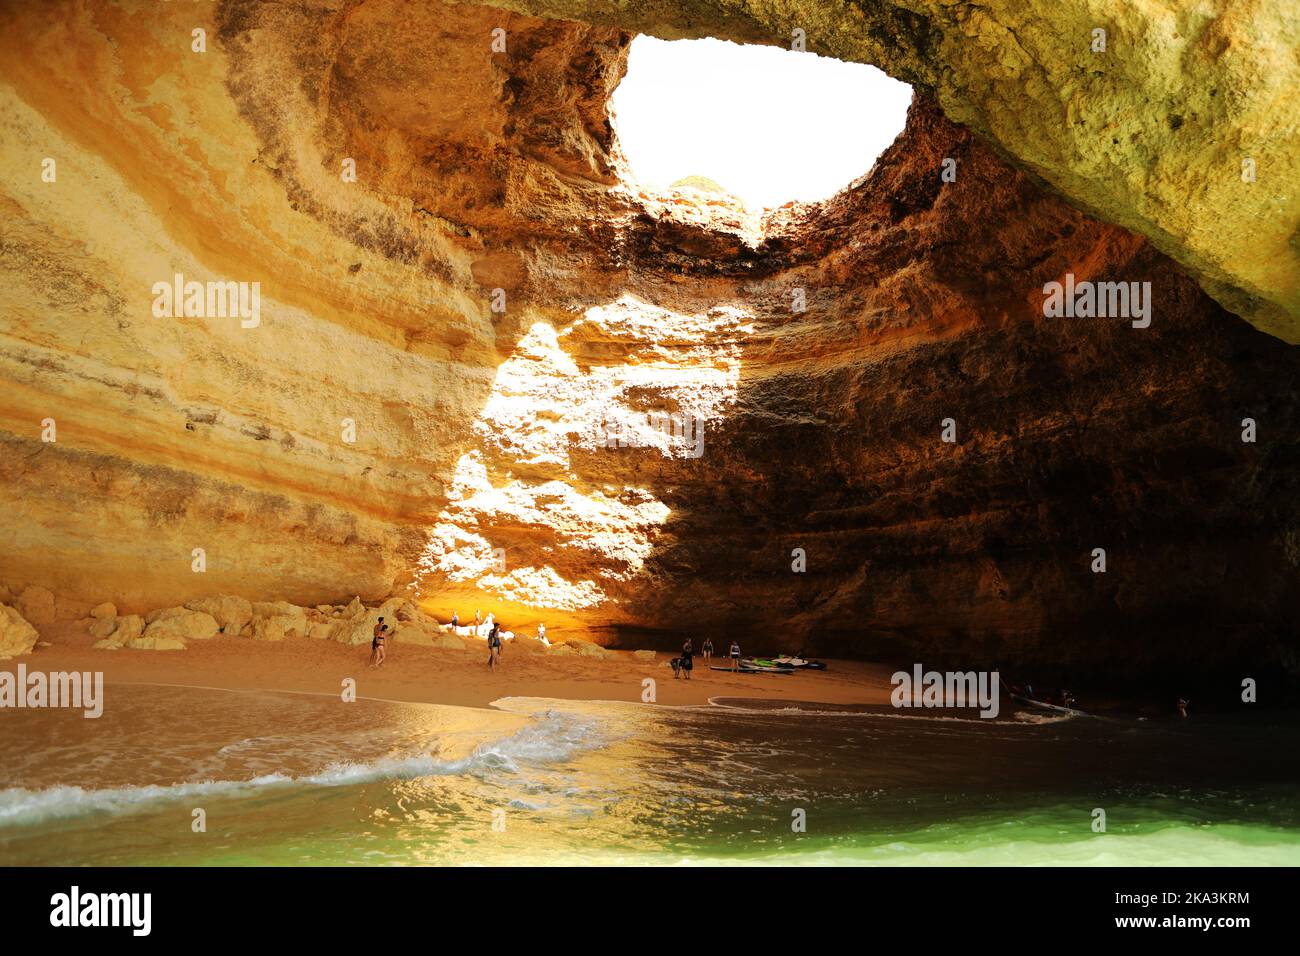 Benagil Cave, Algarve, Portugal Stock Photo